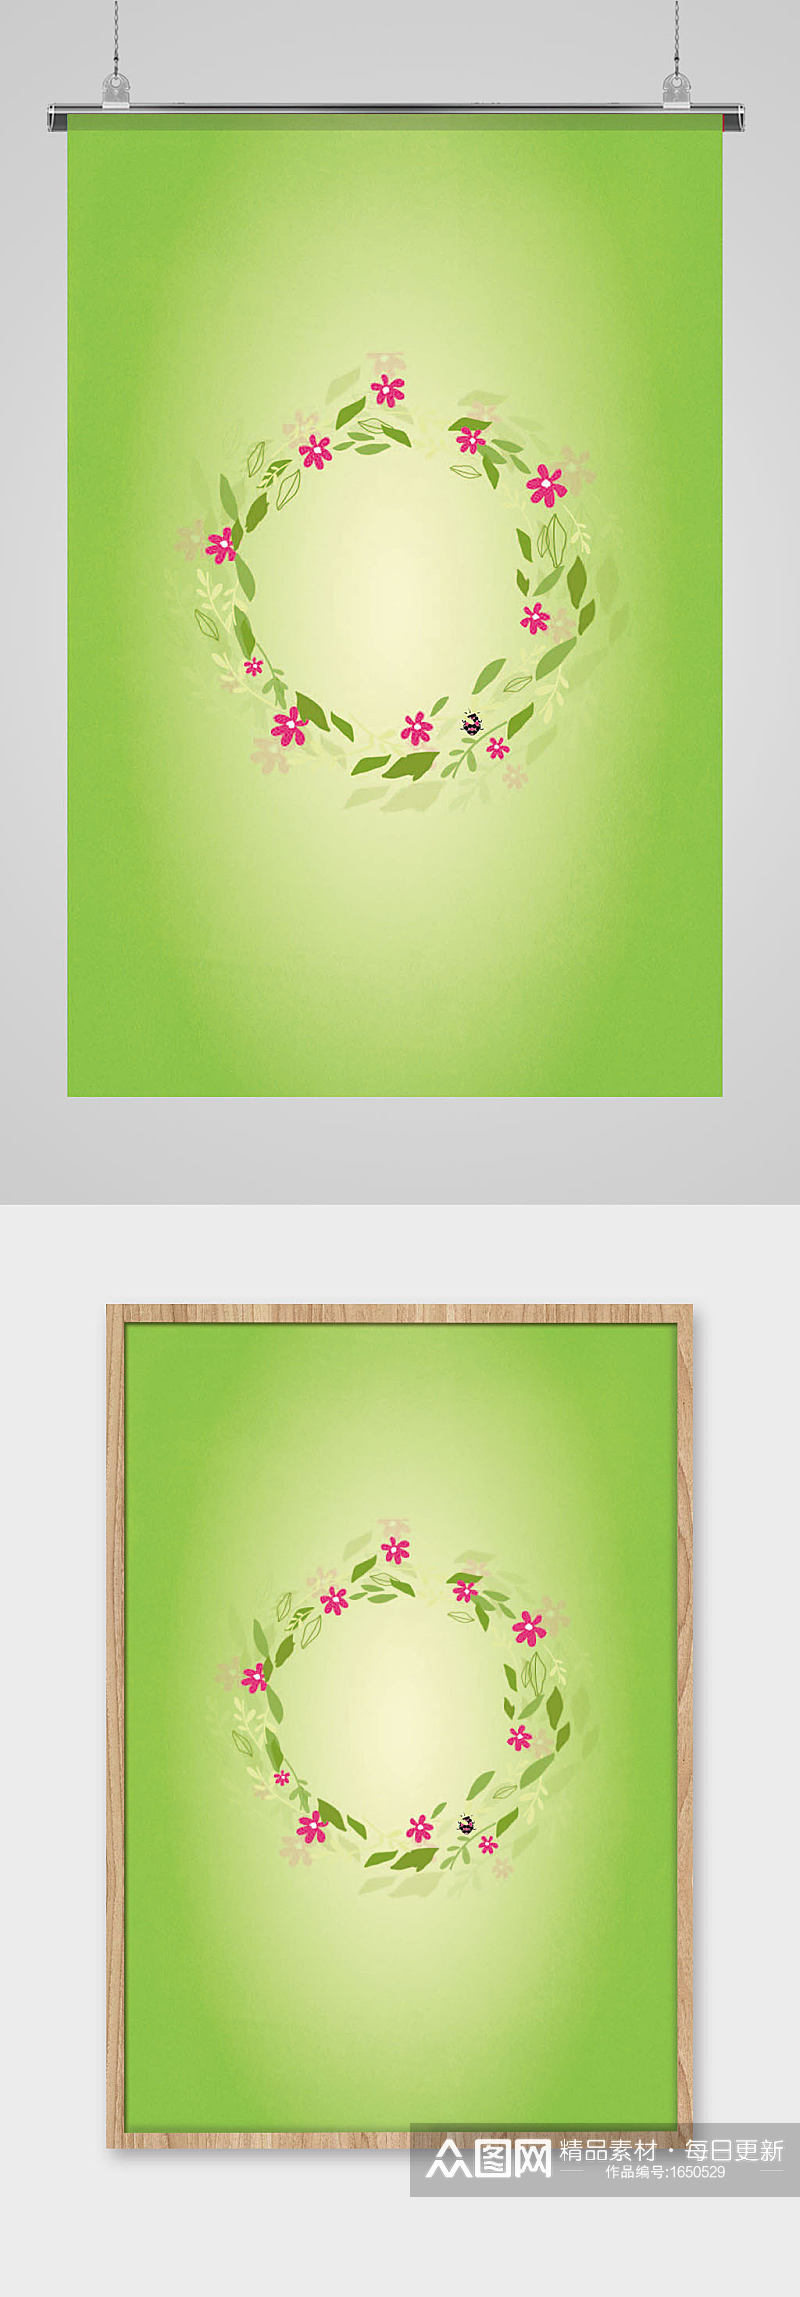 绿色植物手绘卡通插画花朵花环叶子素材